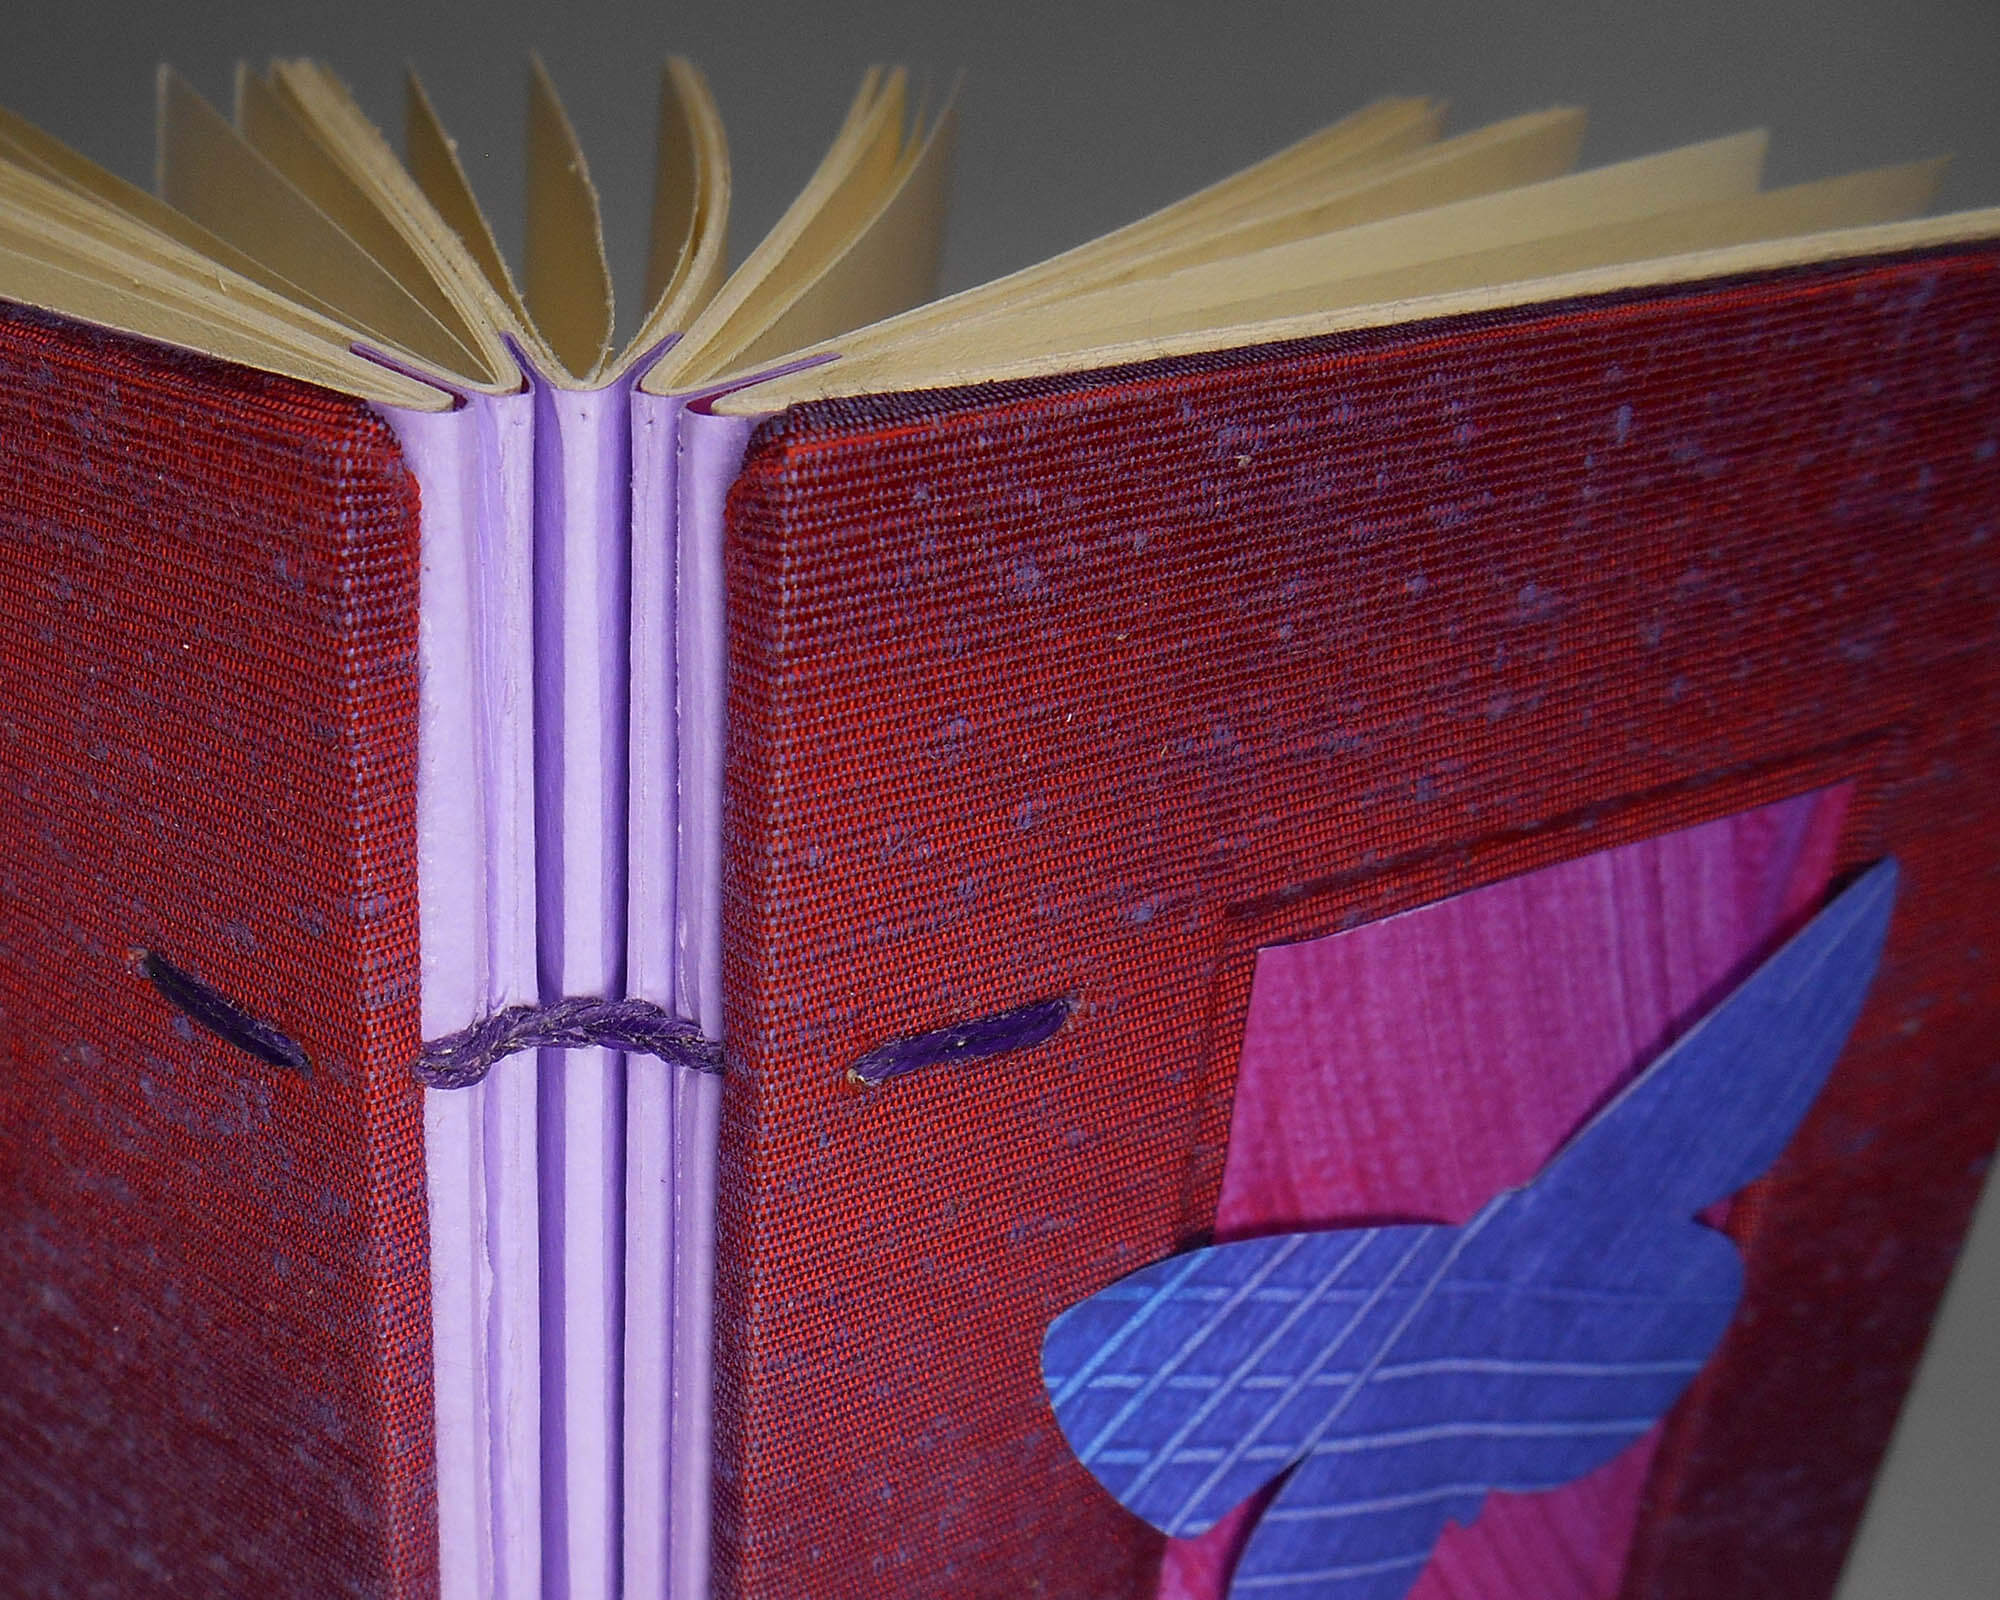 A Modern Coptic Handbound Book closeup - by Joelle Webber